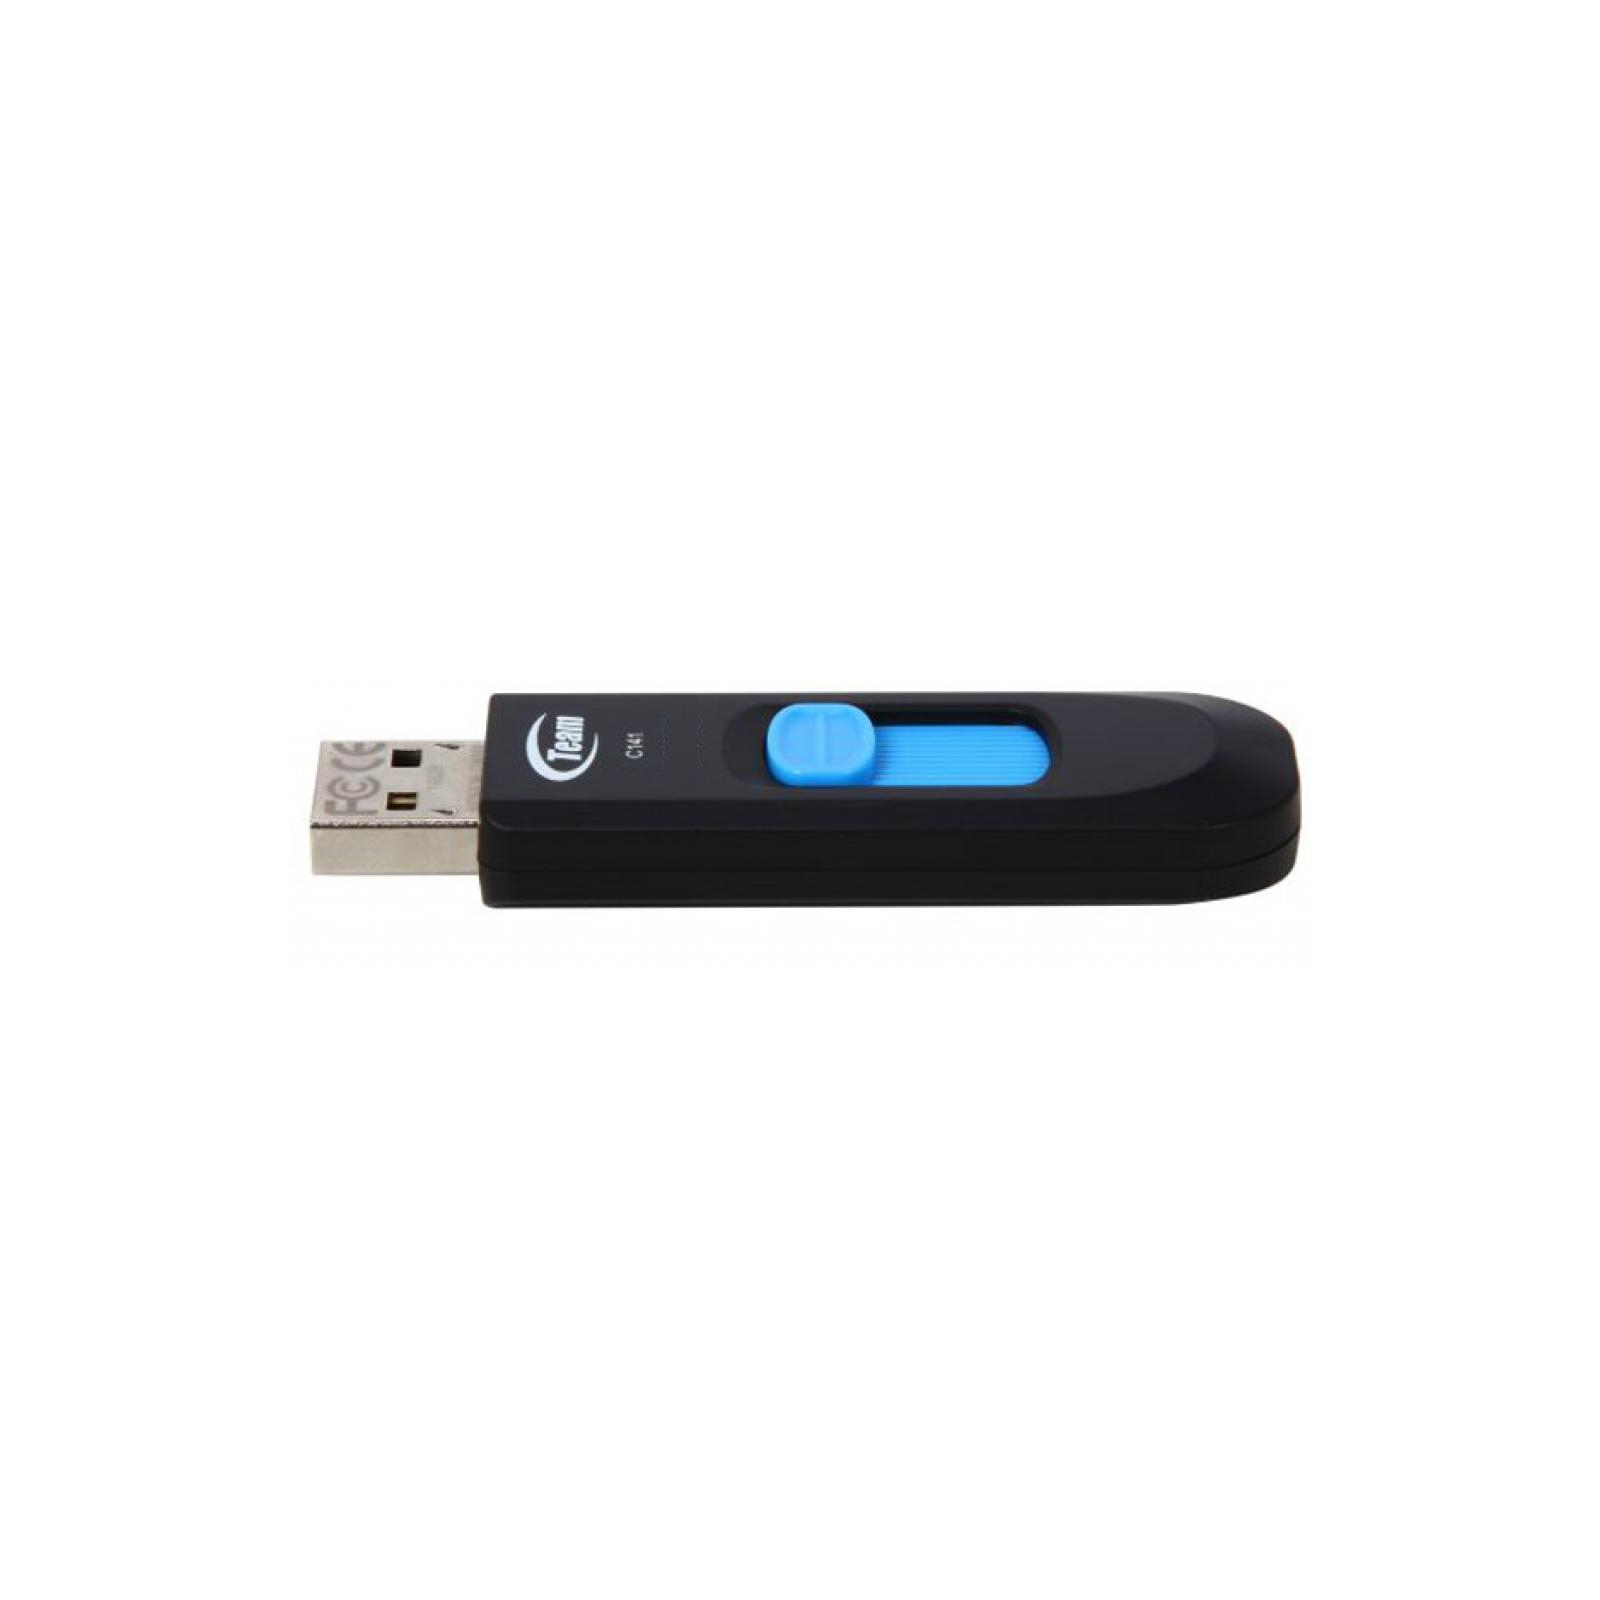 USB флеш накопитель Team 16GB C141 Blue USB 2.0 (TC14116GL01) изображение 3